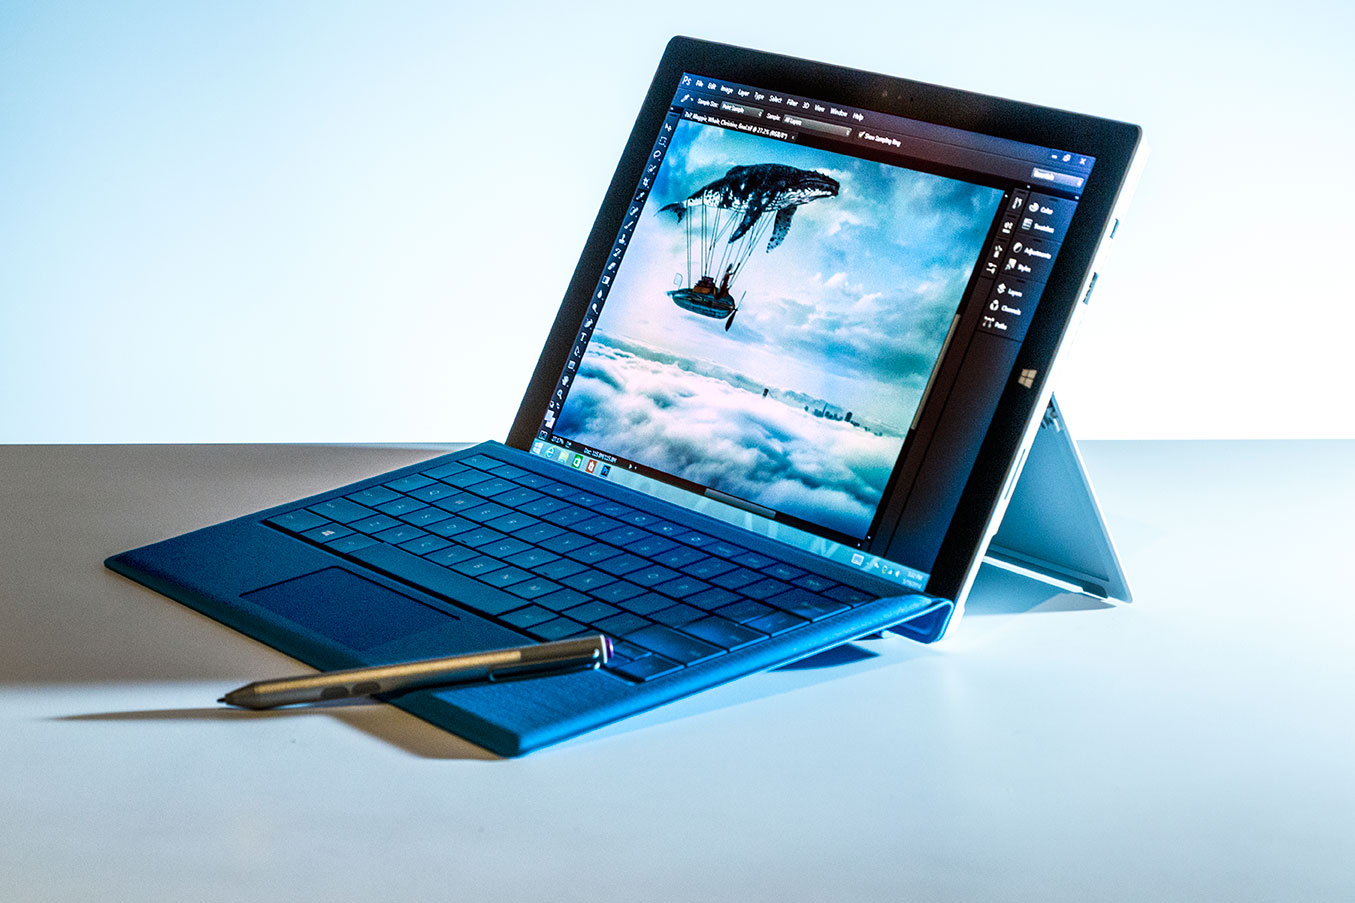 En ny fastvareoppdatering skal ha løst batteriproblemene til Surface Pro 3.